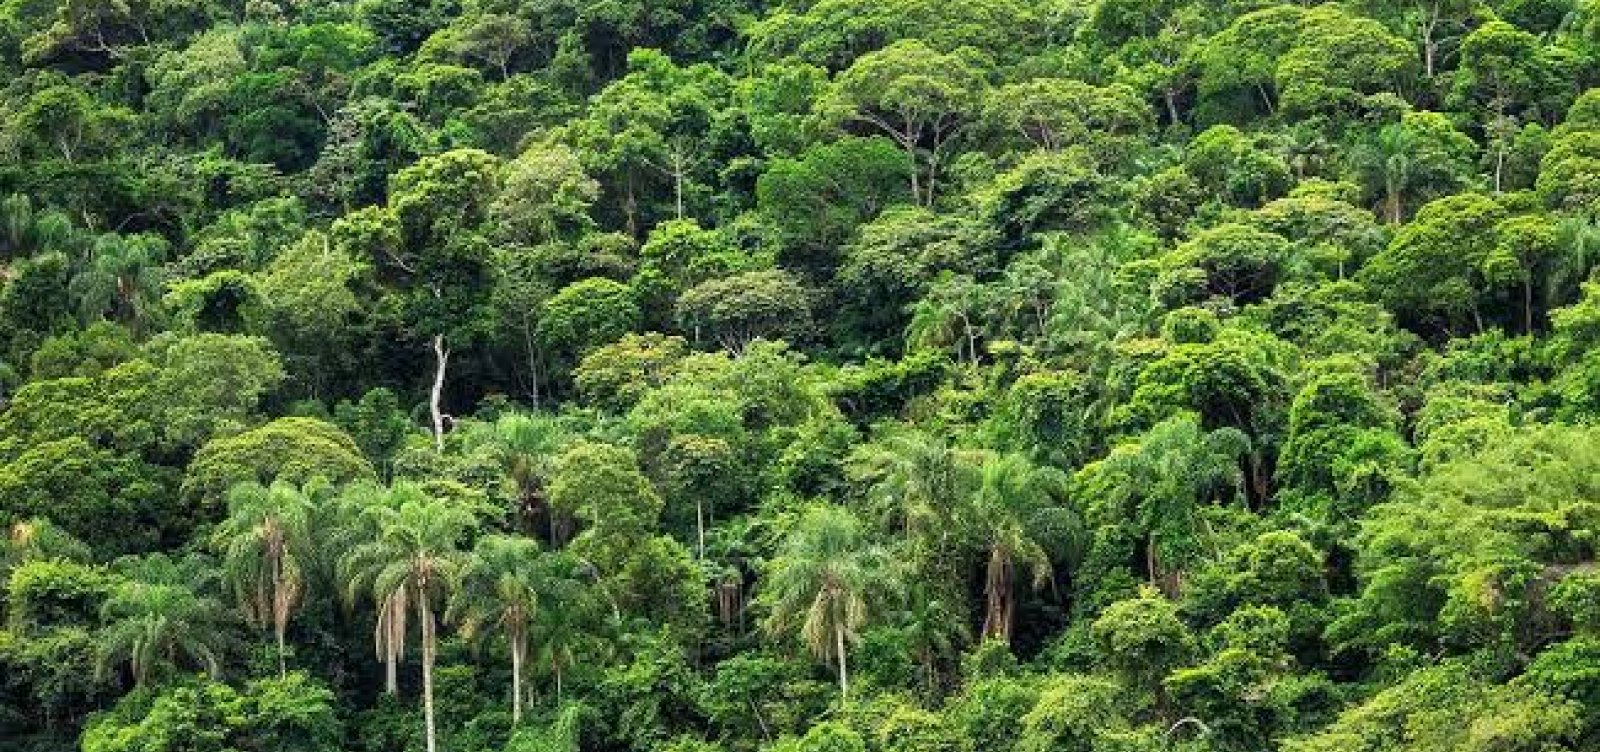 Brasil foi responsável por um terço da perda de florestas virgens no mundo em 2019, diz relatório